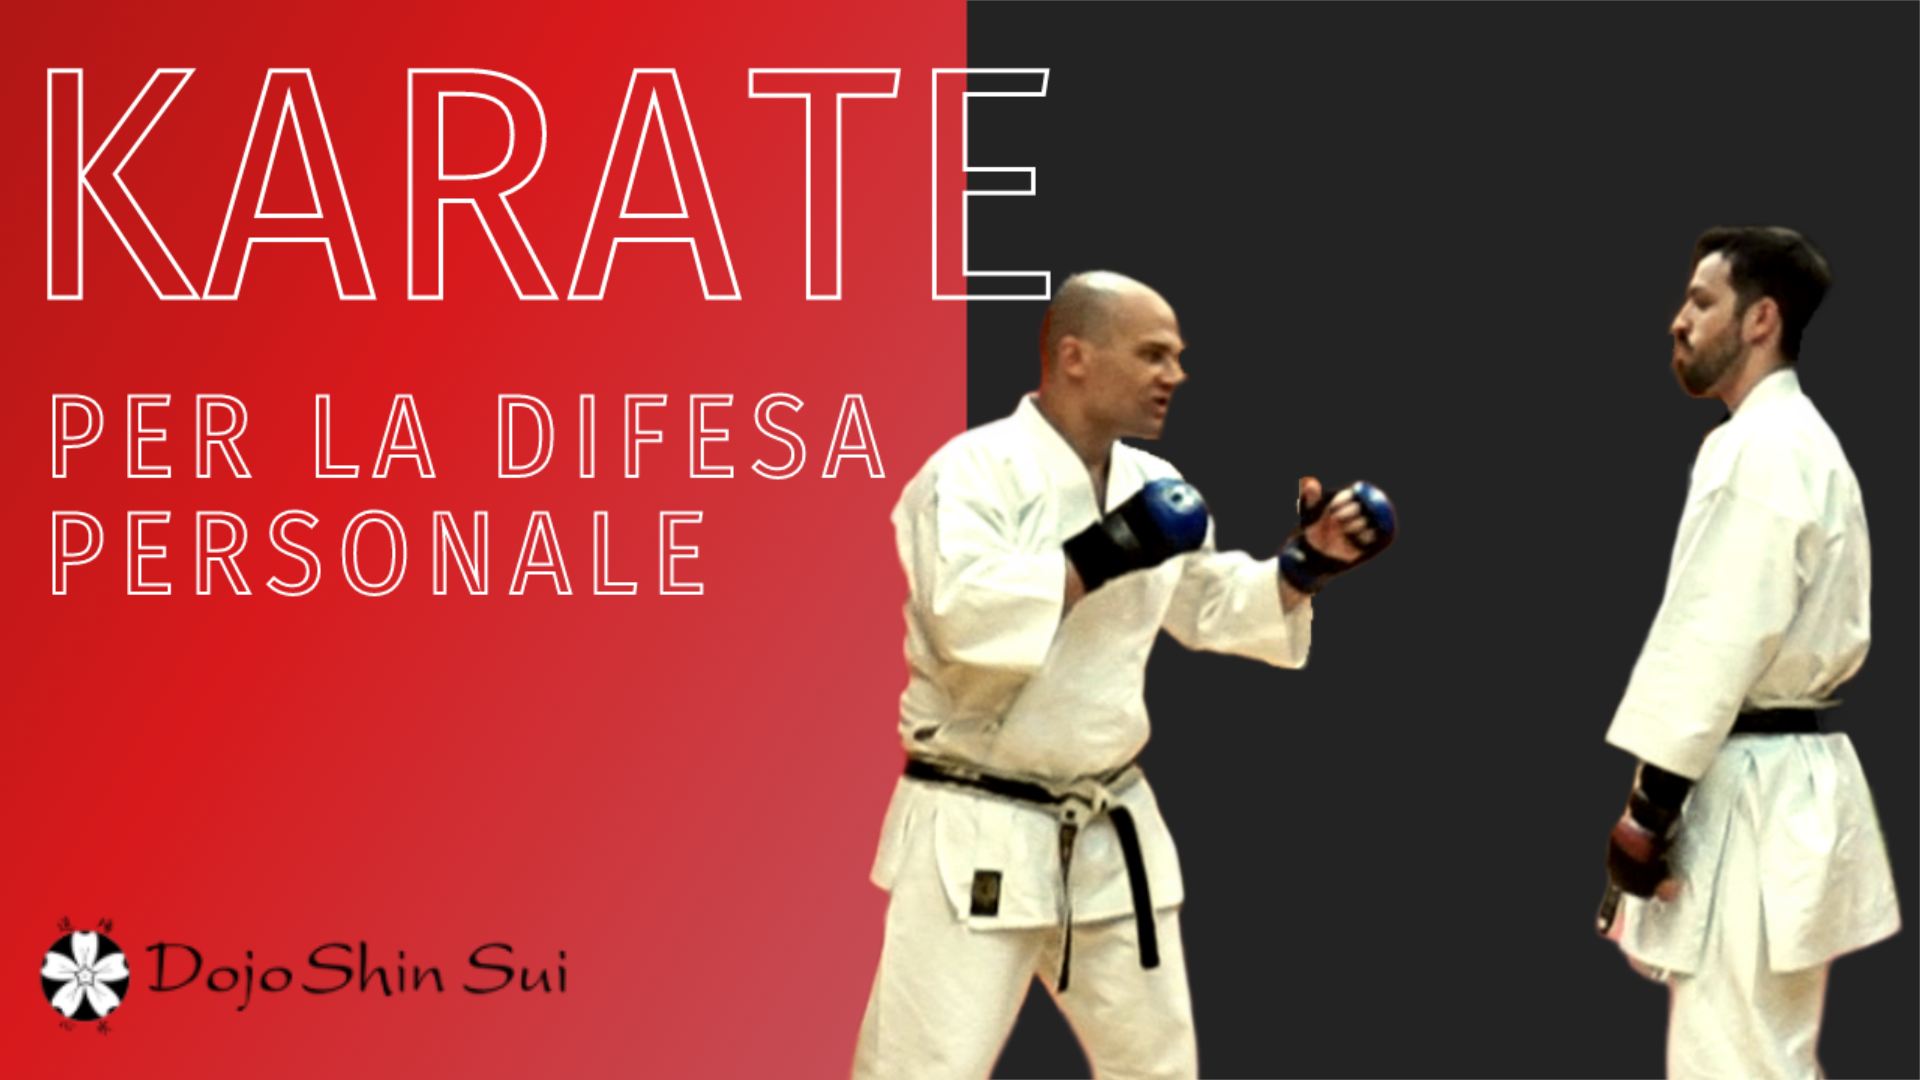 Il podcast che ti racconta la storia e i segreti del karate, con Eugenio Credidio